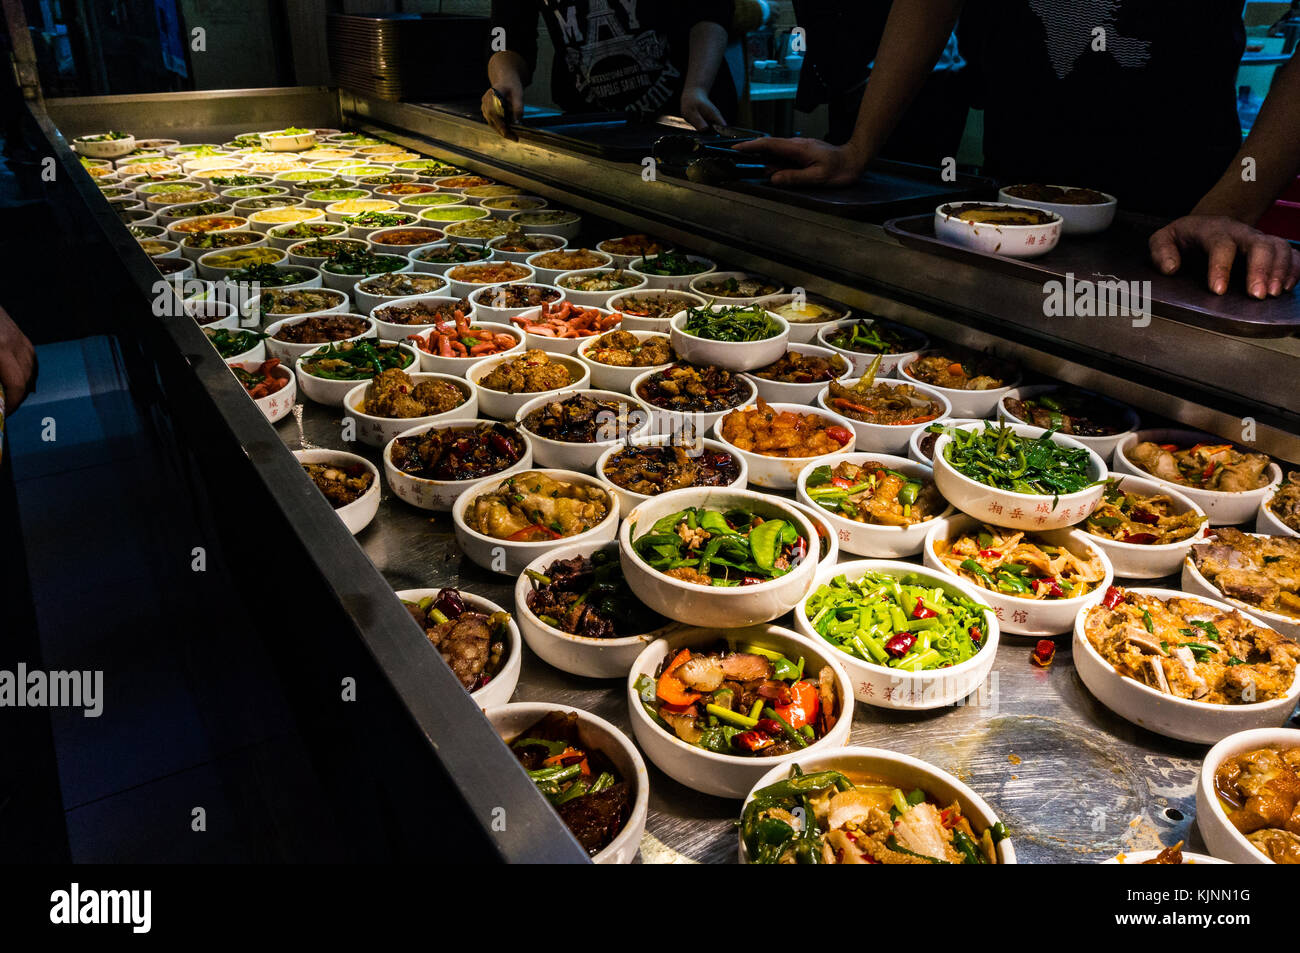 La cuisine chinoise dans des bols disposés en rangées au stand de l'alimentation de rue dans la zone populaire avec pingzhou foodies à Shenzhen, Chine Banque D'Images